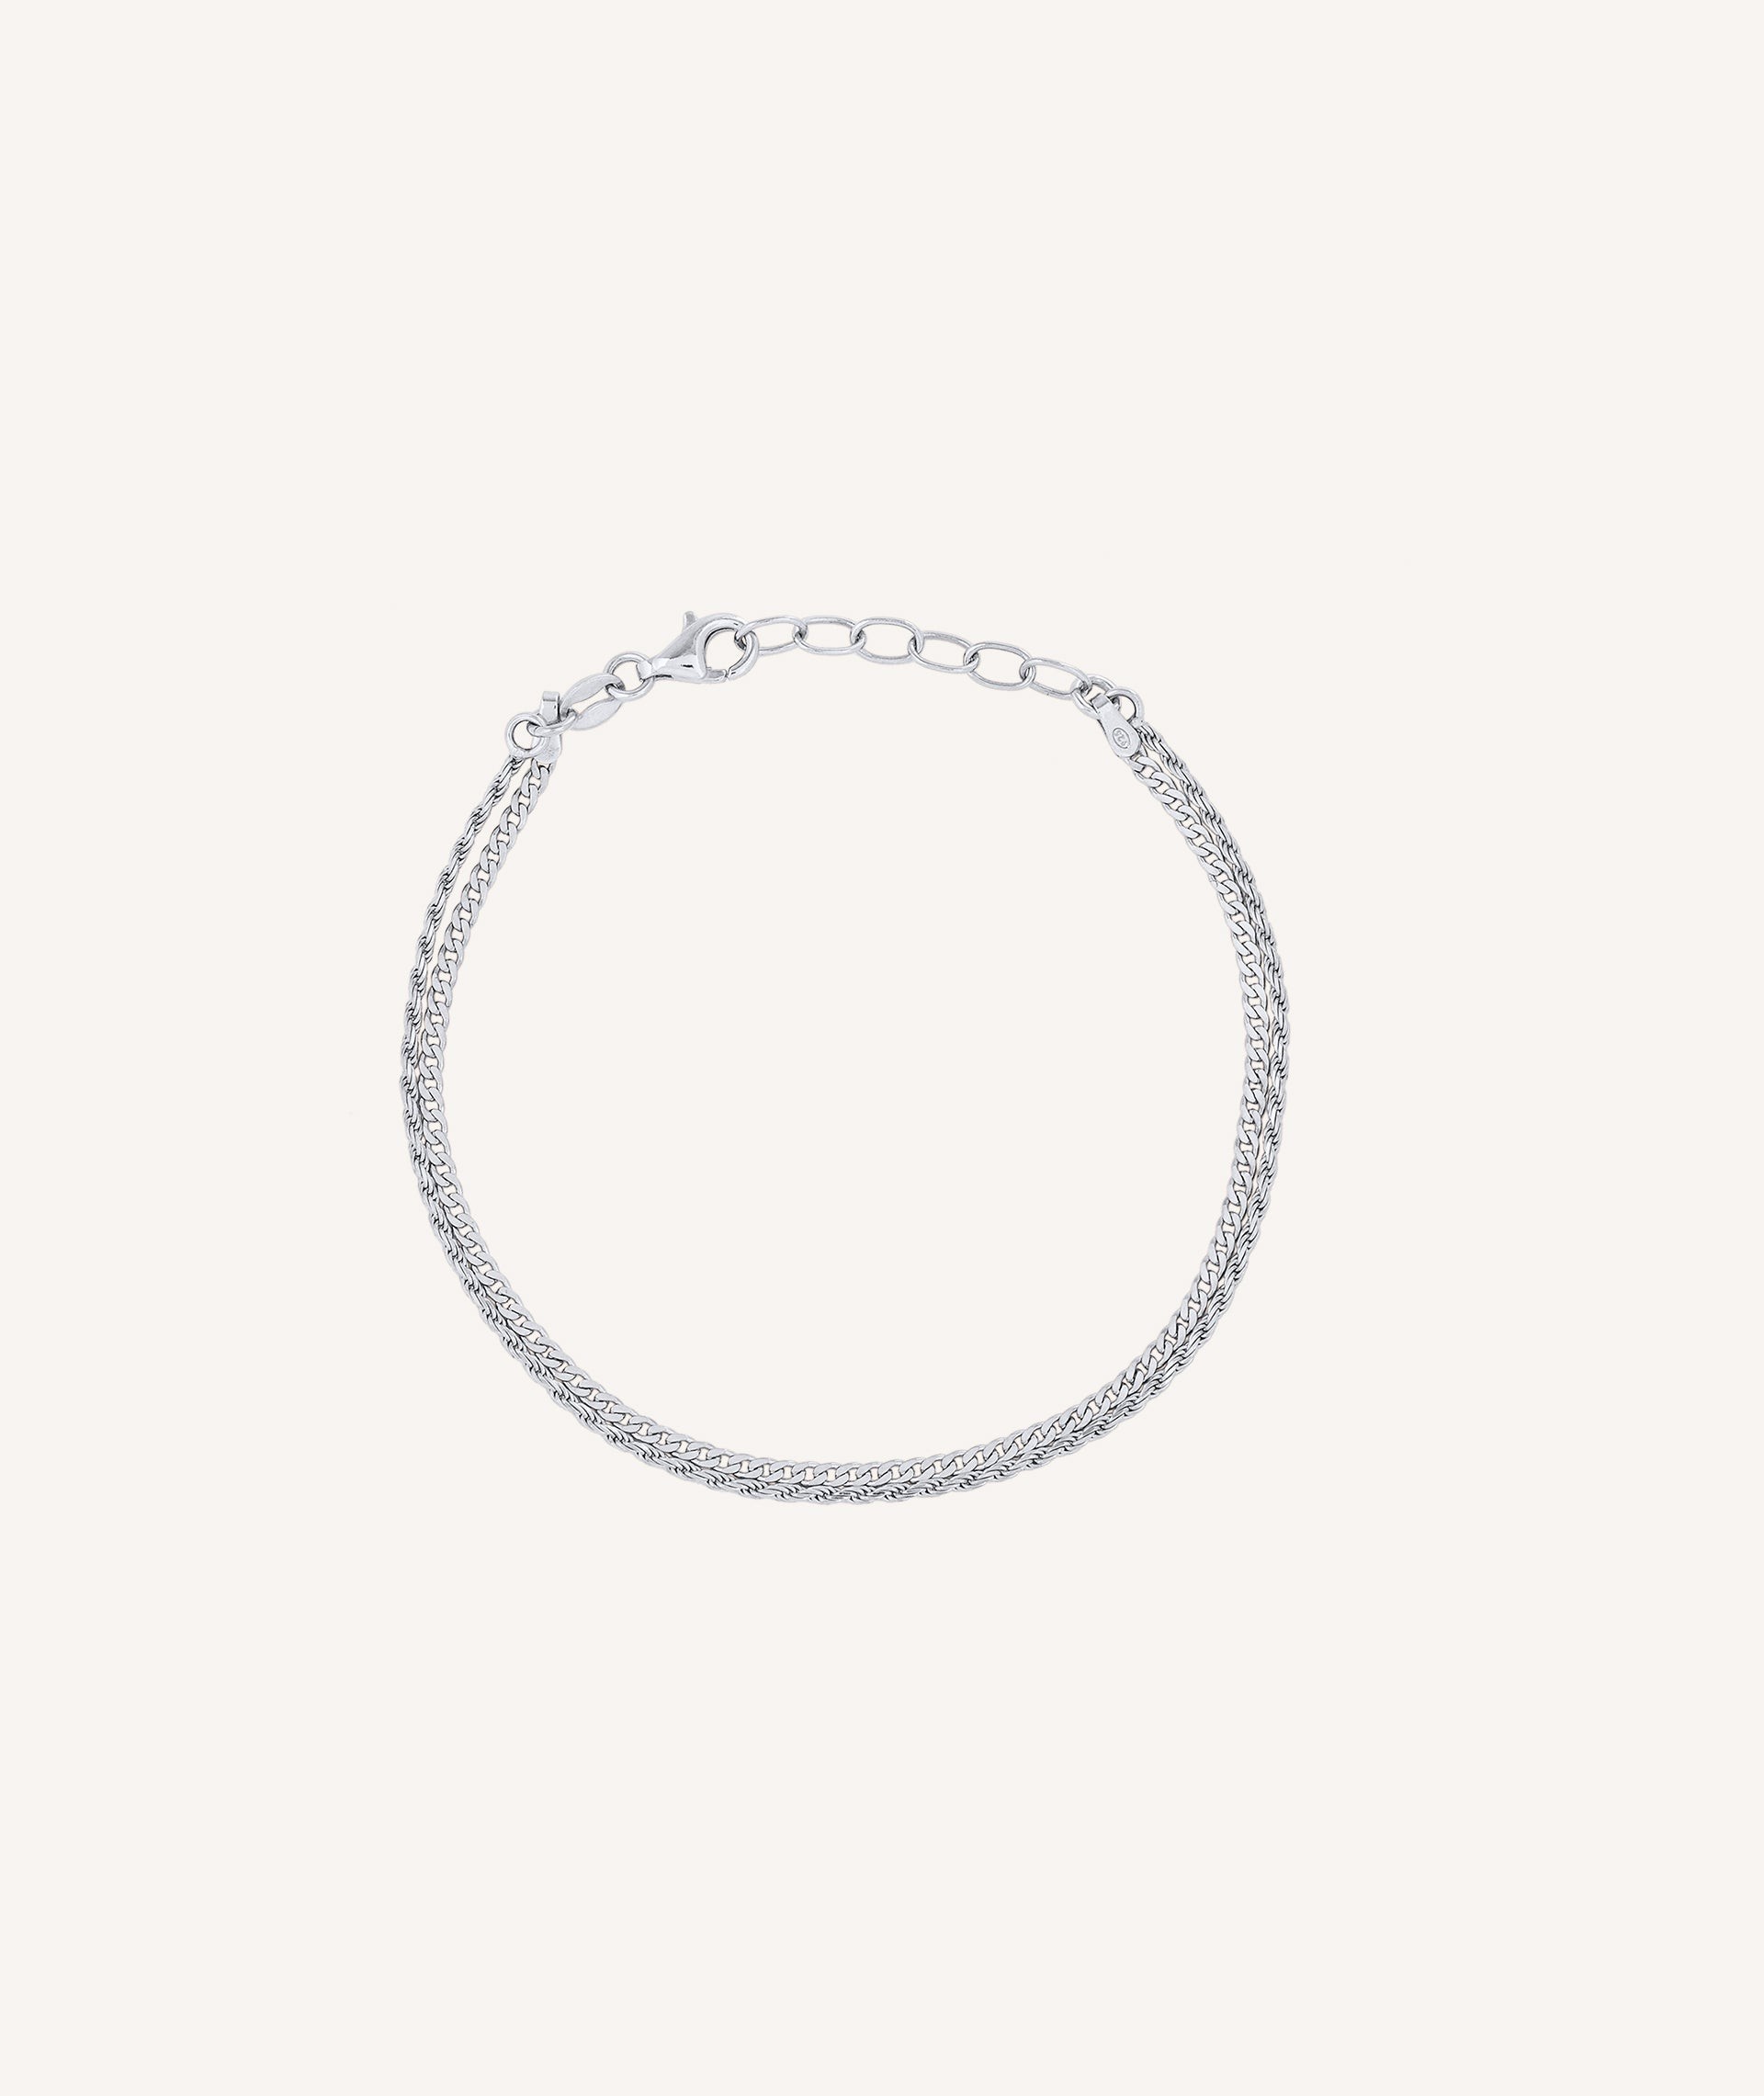 Bracelet Sweet silver 925 double chain links